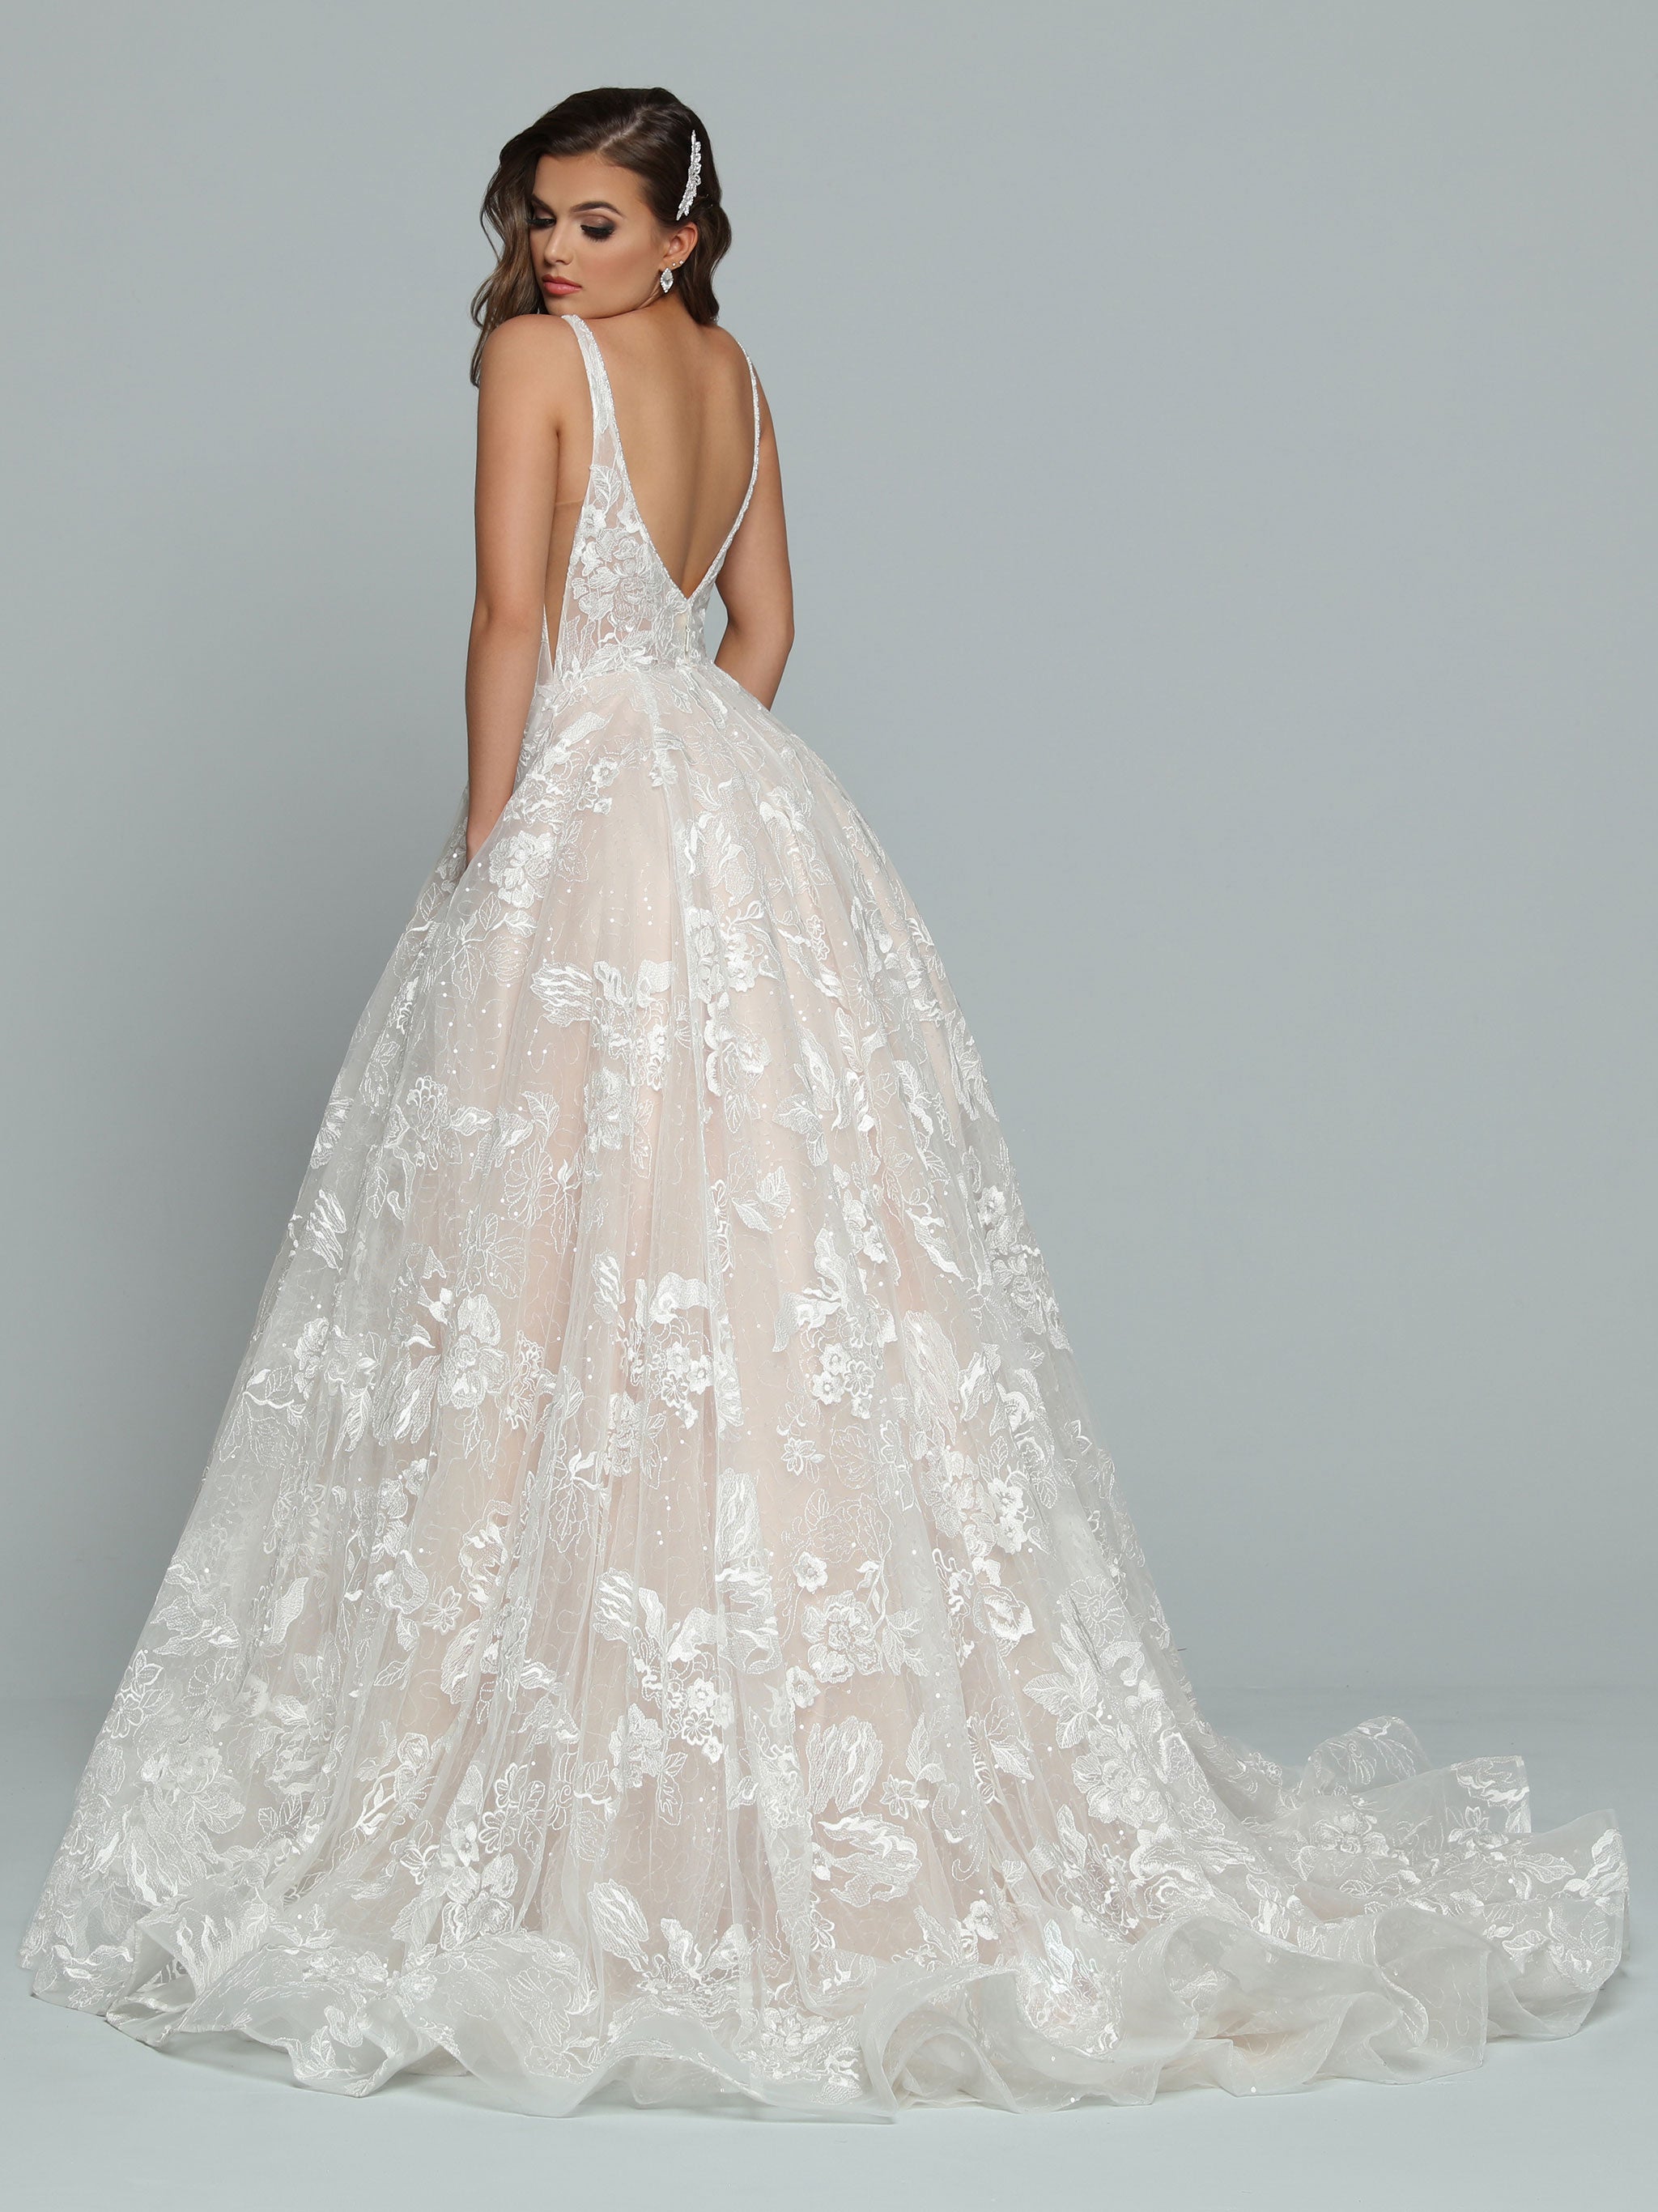 Wedding Dresses & Gowns With Pockets | Online Bridal Shop – Olivia Bottega